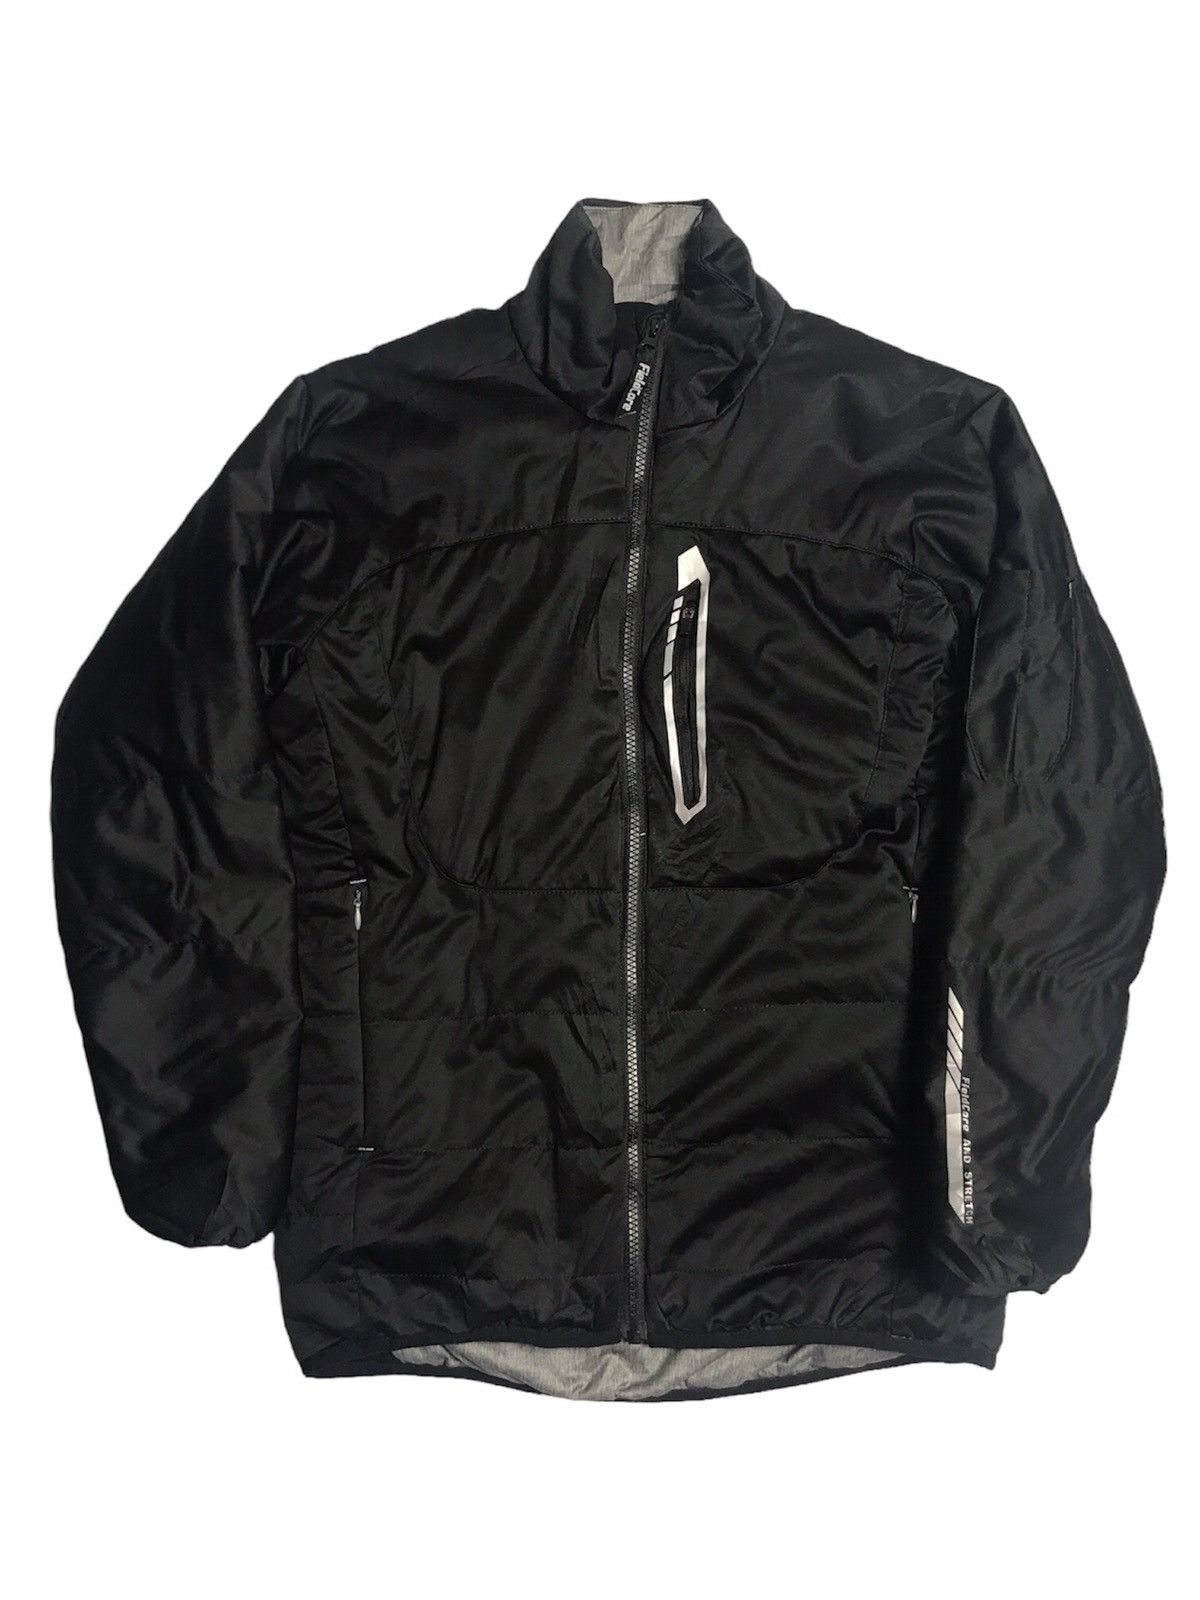 Sportswear FieldCore Aero Stretch Jacket | Grailed